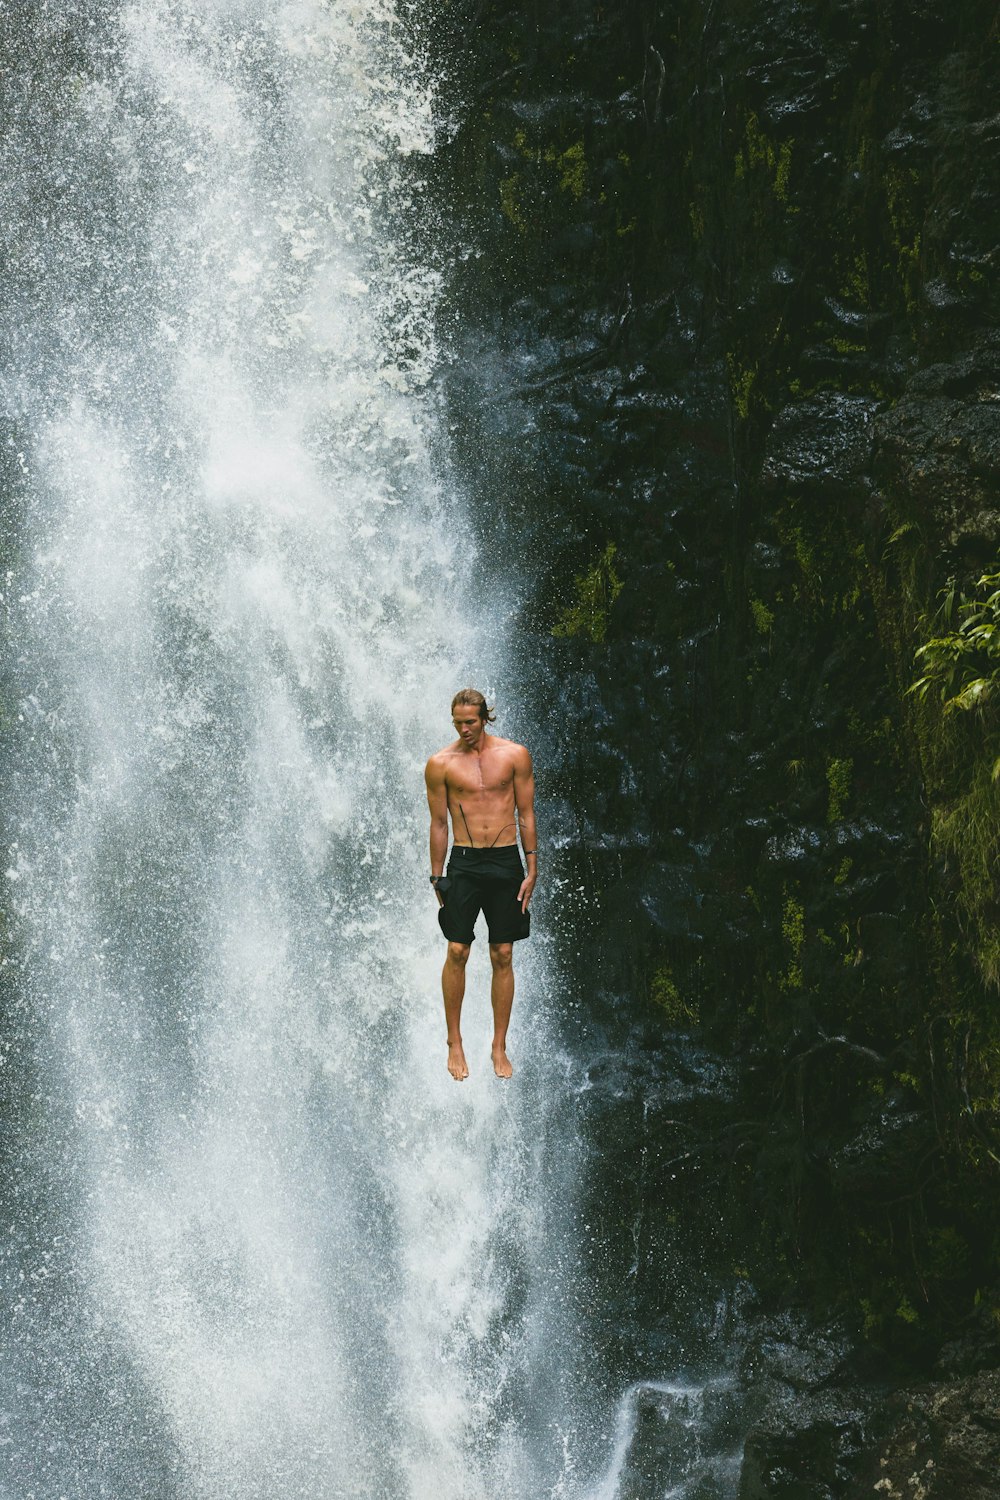 Mann springt in Wasserfälle